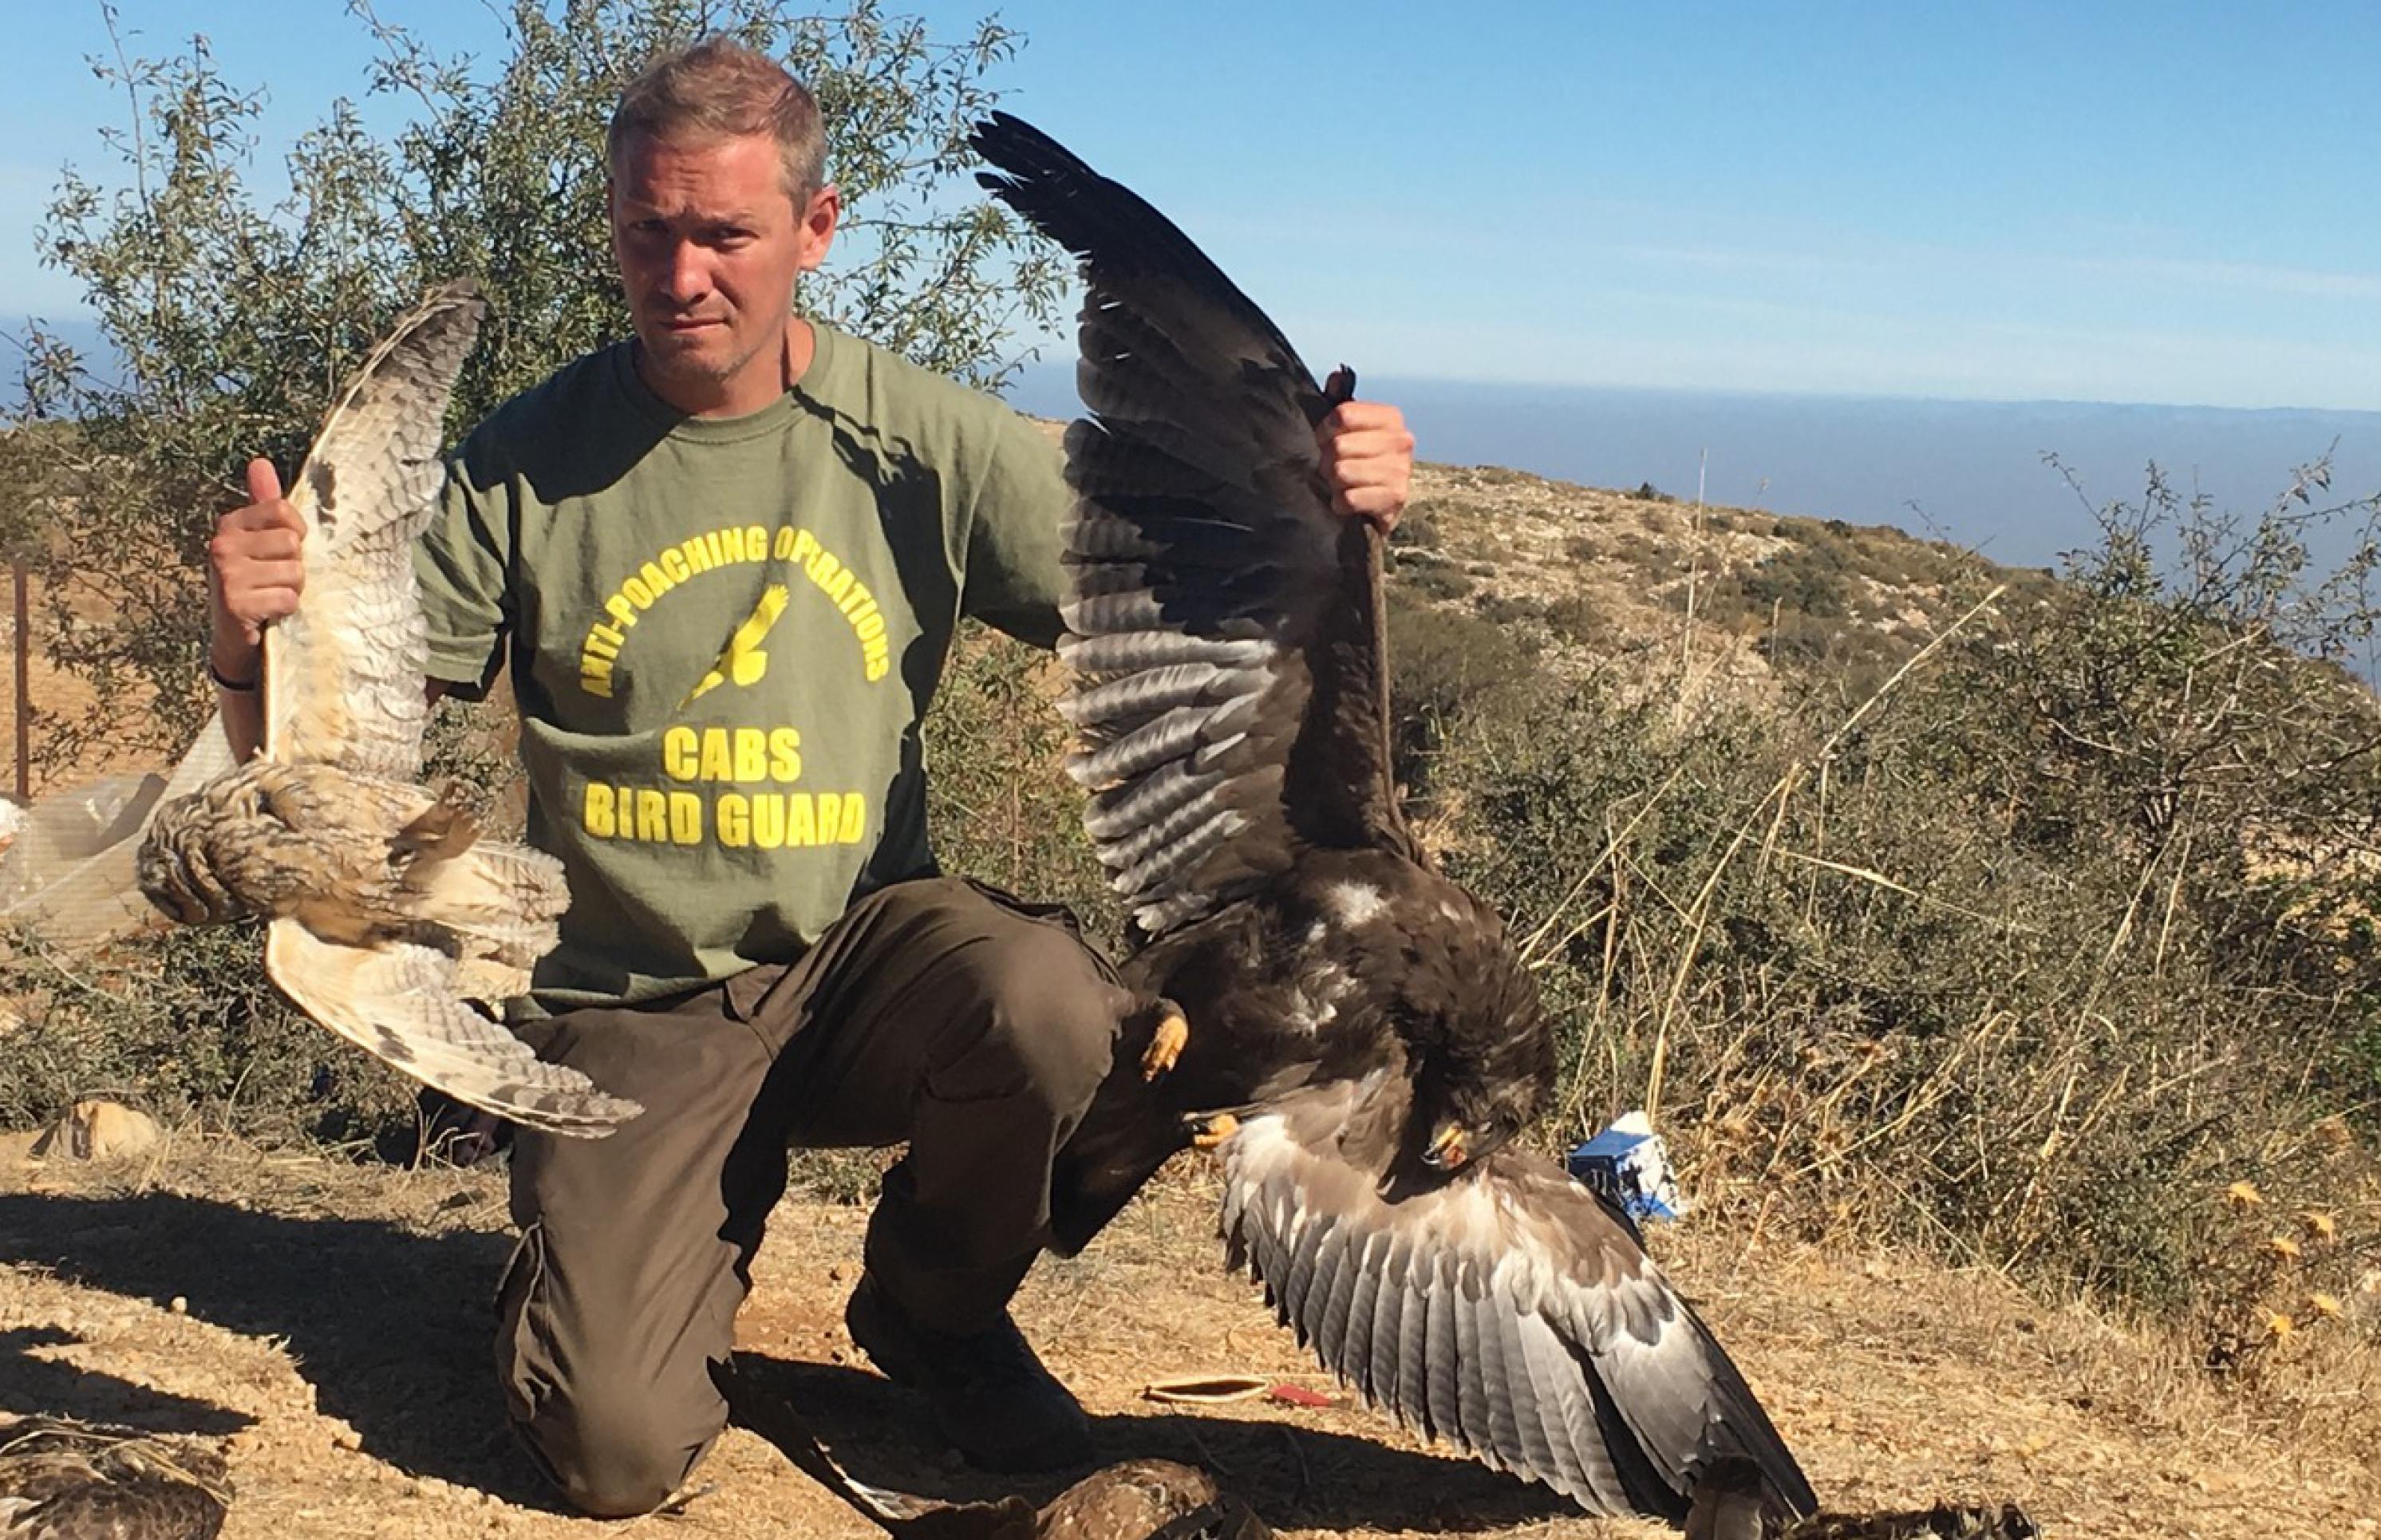 Lloyd Scott kniet auf dem Boden und hält dabei zwei getötete Vögel in die Luft: einen Schreiadler und einer Waldohreule.